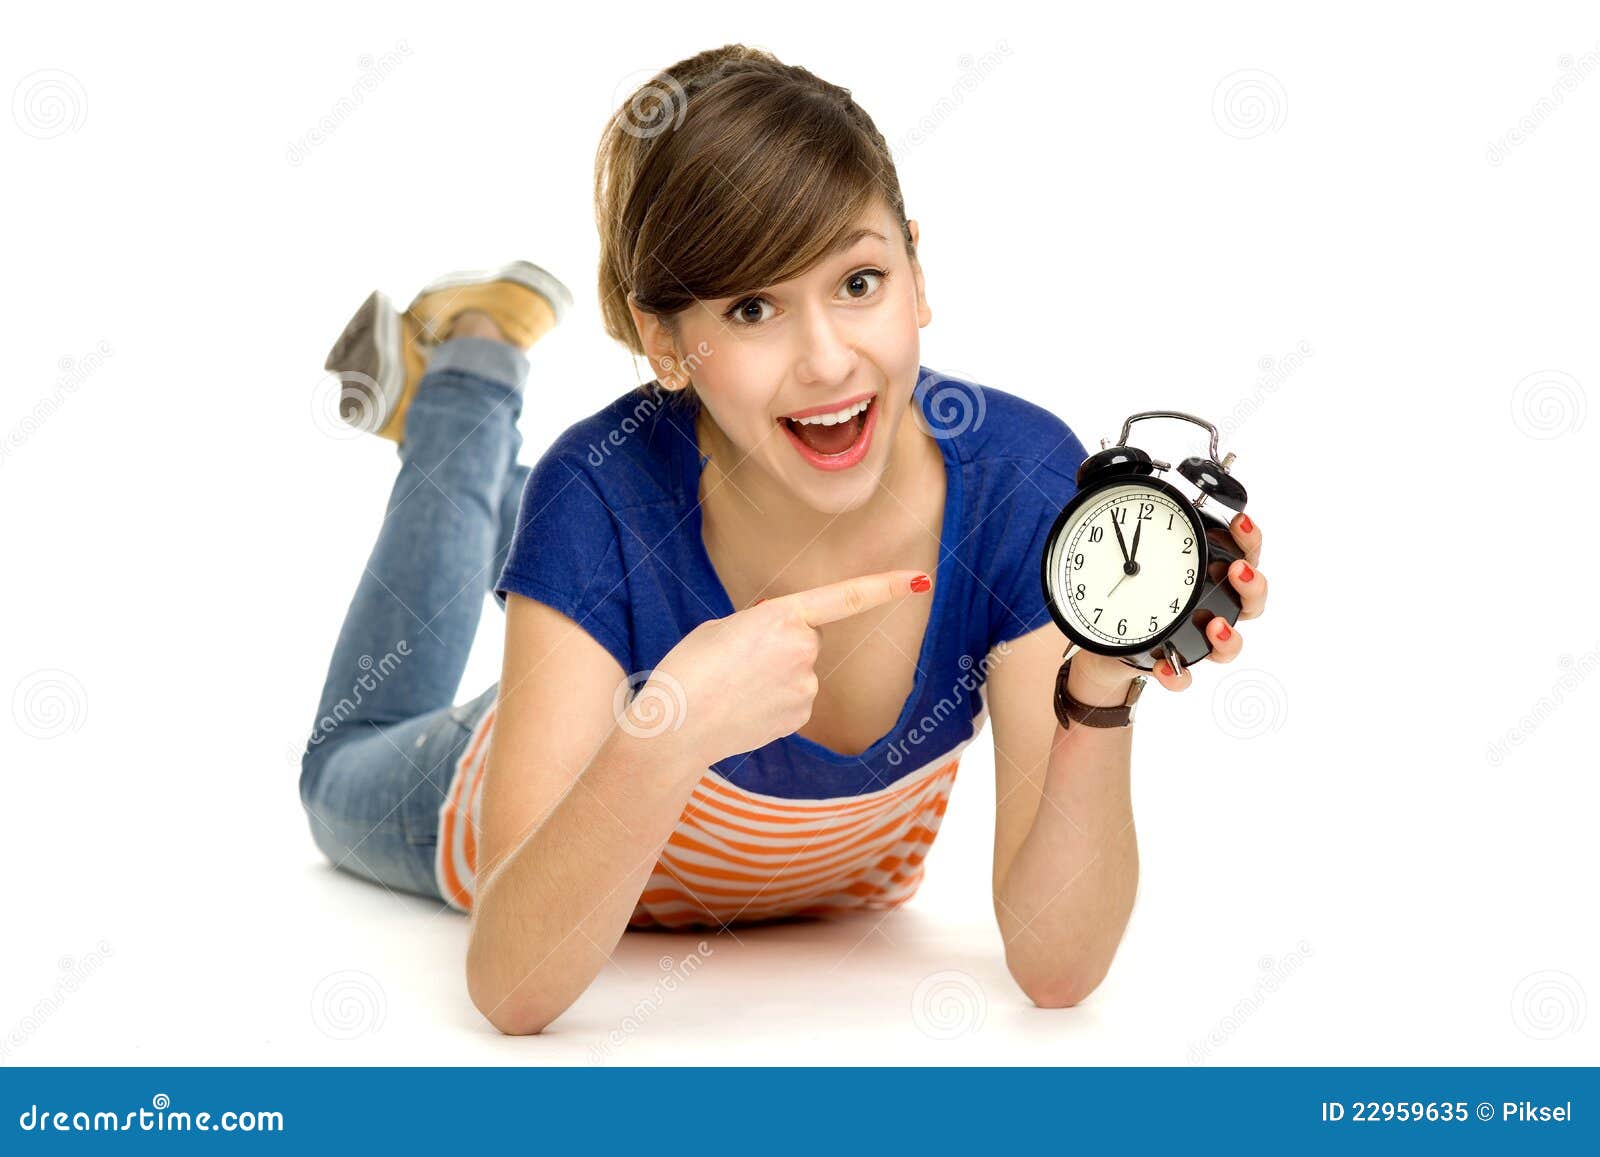 Подросток на час. Подросток с часами. Часы для подростка. Маленькая девочка с часами. Подростки с часами на руке.